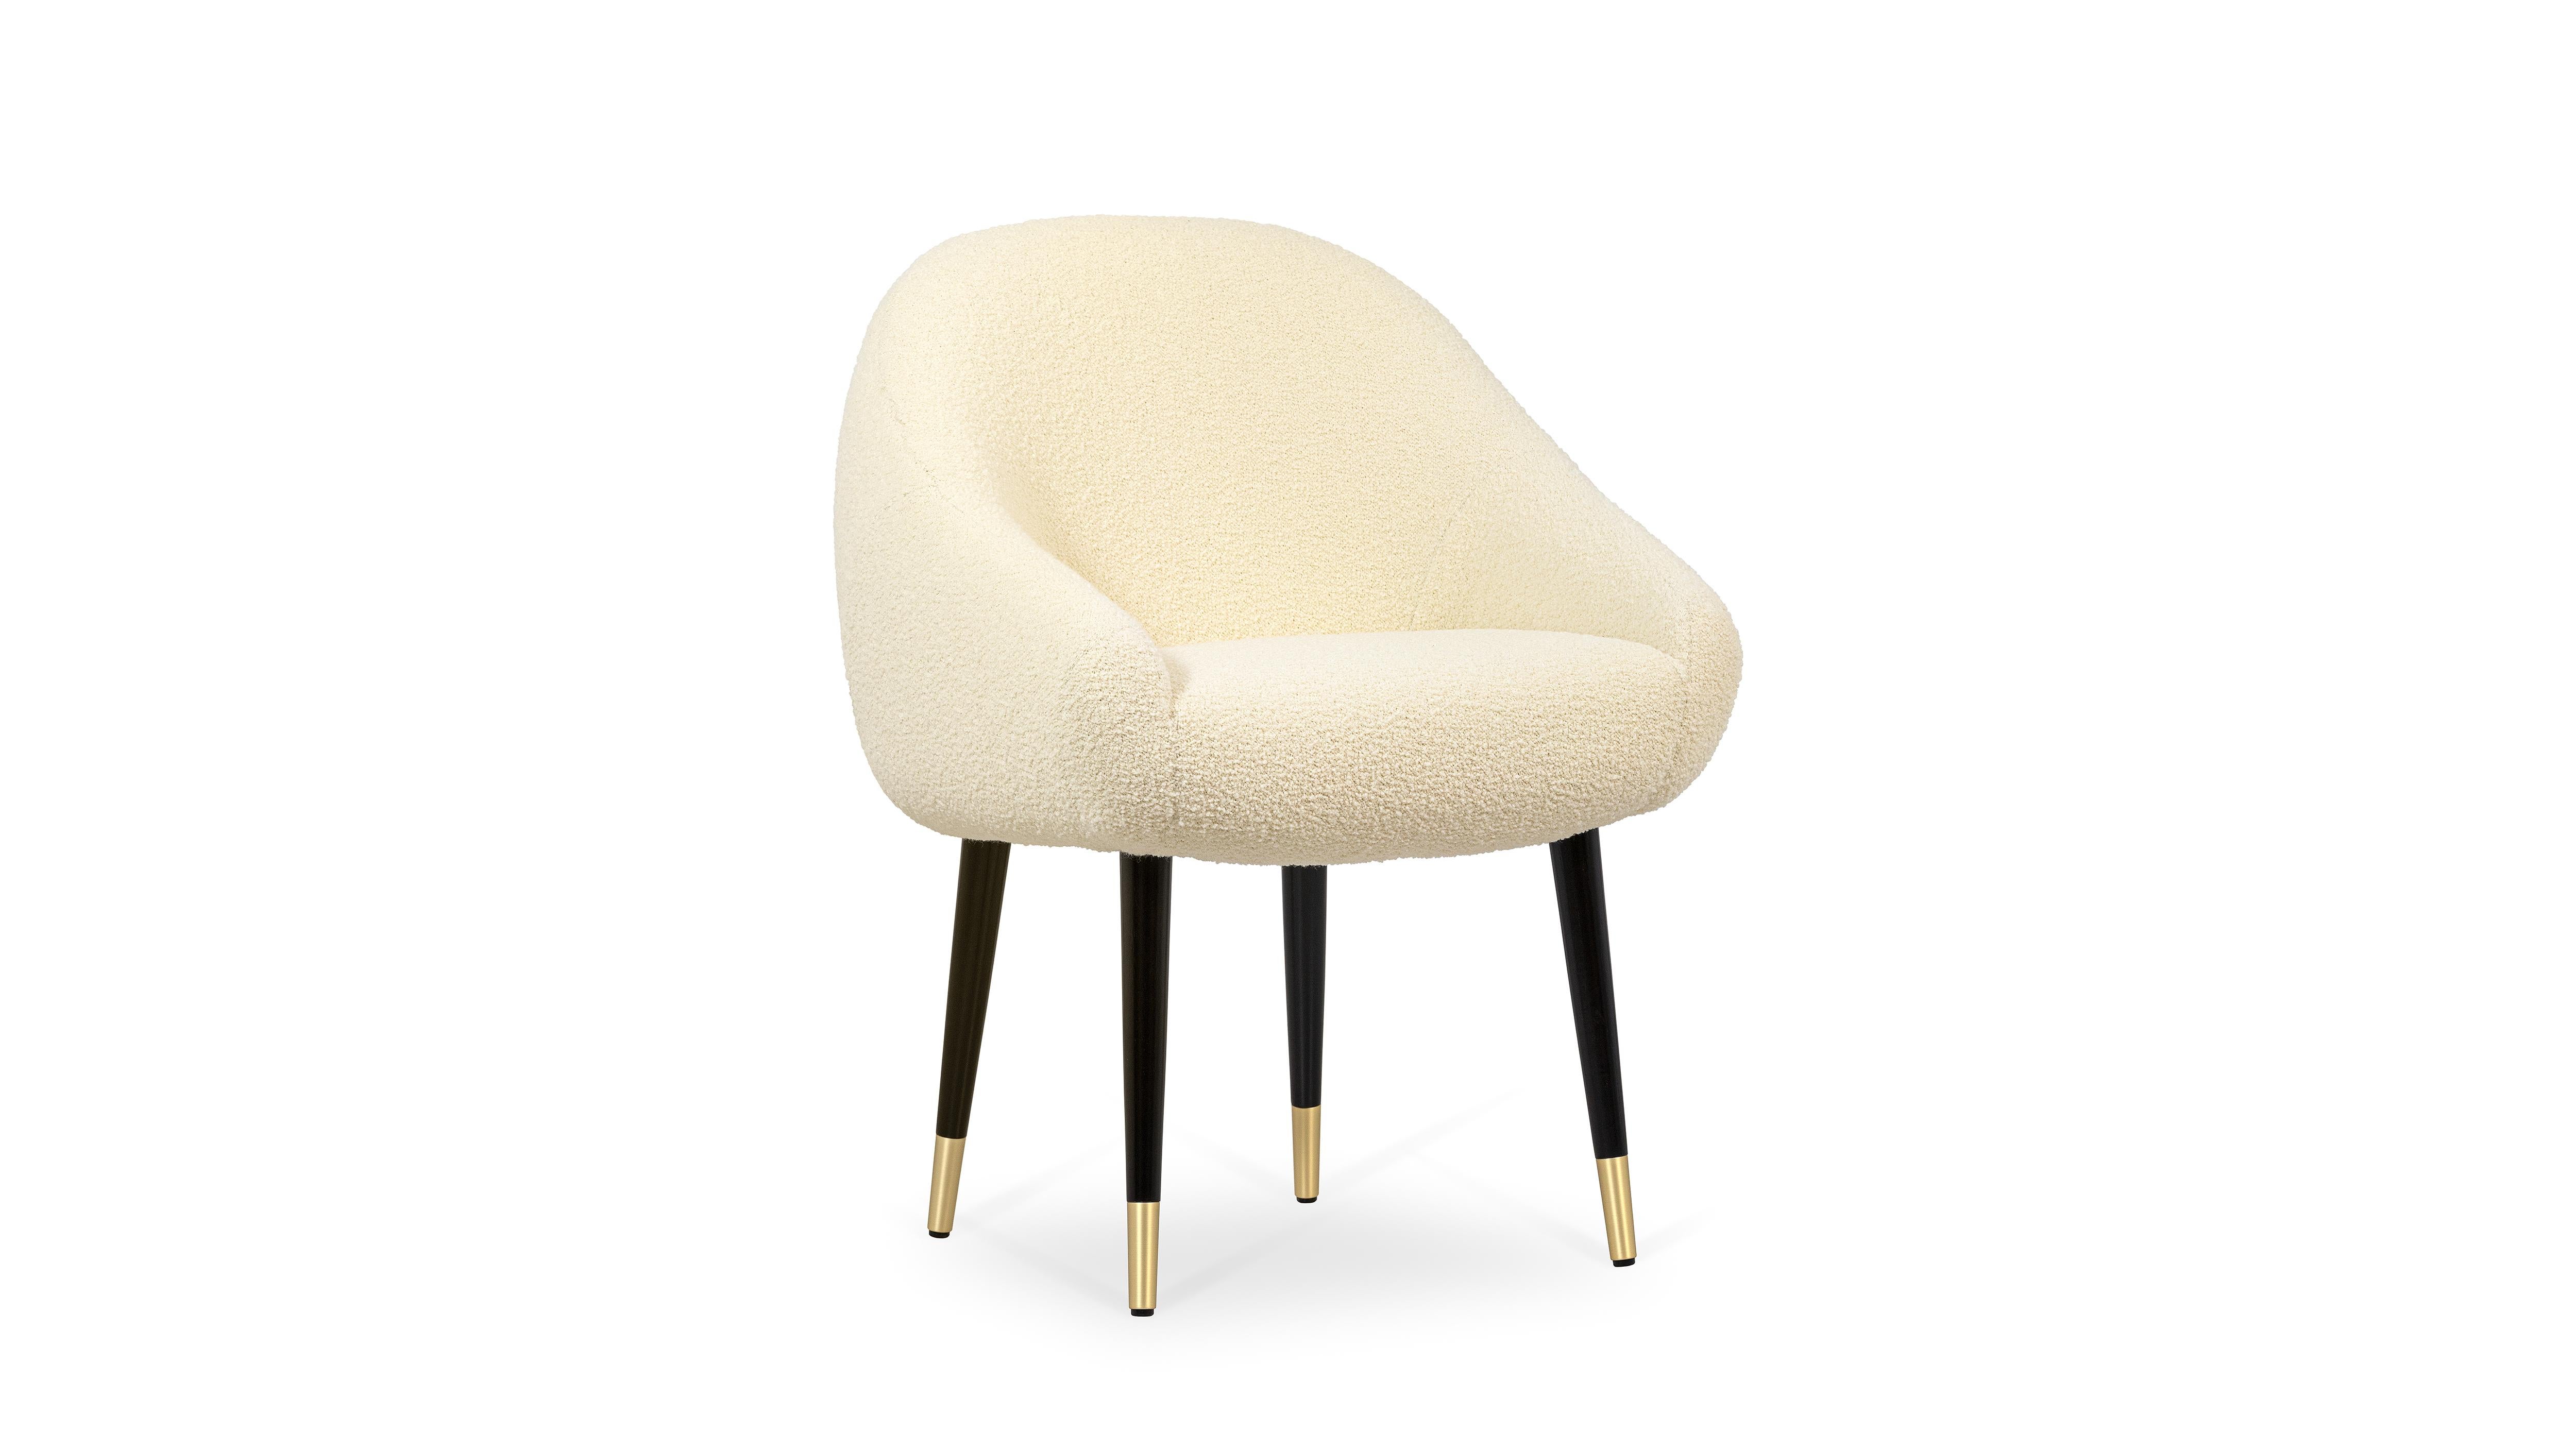 Chaise de salle à manger Niemeyer en laiton par InsidherLand
Dimensions : D 65 x L 62 x H 83 cm.
MATERIAL : Tissu InsidherLand Charm ref. 1, bois de chêne foncé, laiton brossé.
12 kg.
Disponible en différents tissus.

La chaise de salle à manger